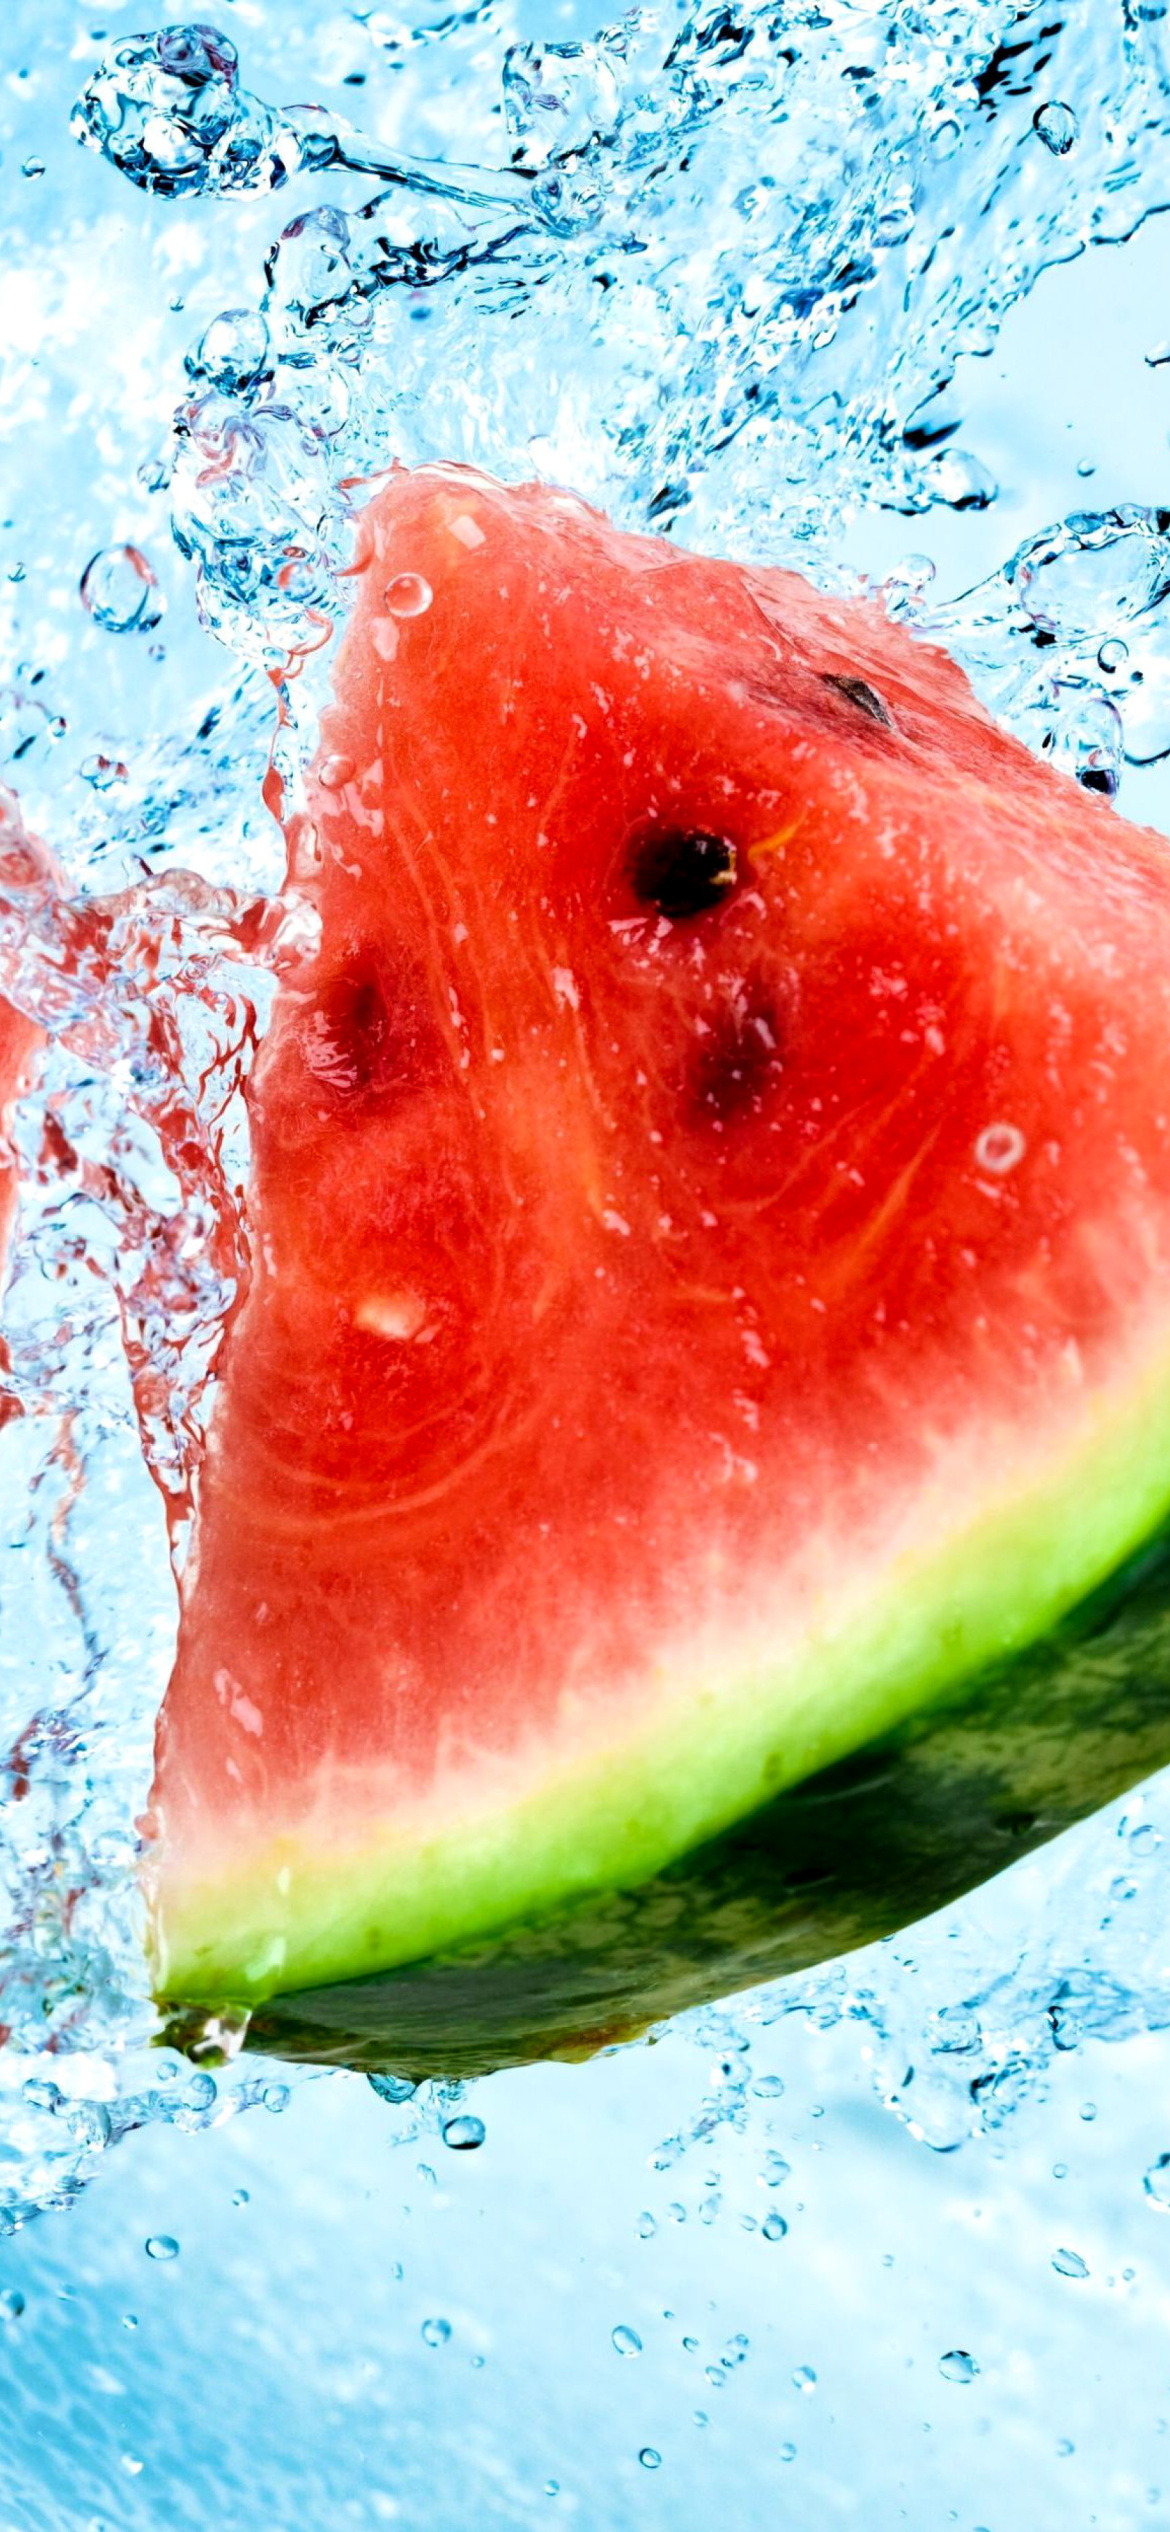 Watermelon Triangle Slices wallpaper 1170x2532